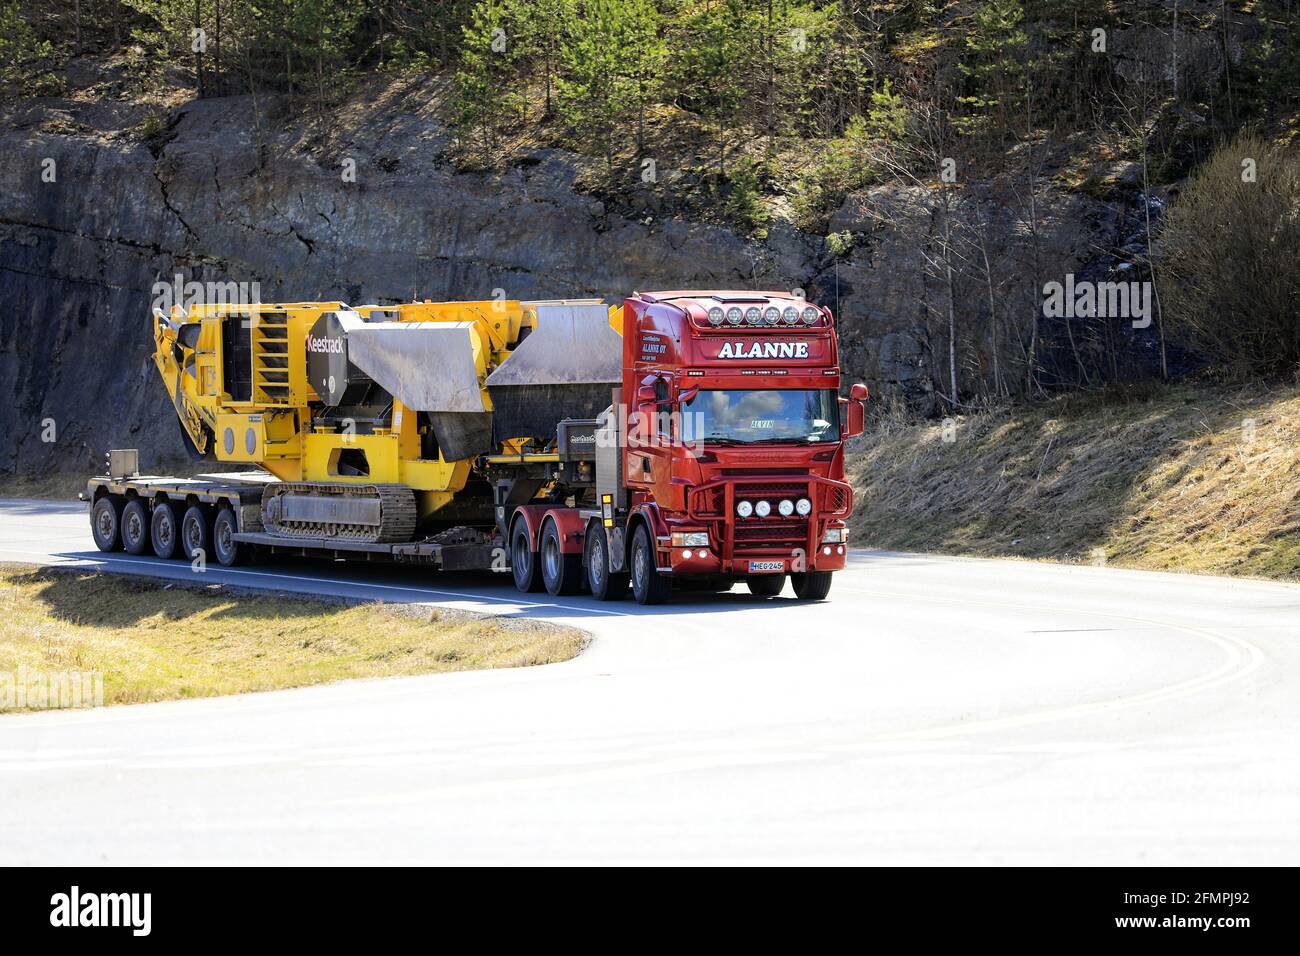 Le camion Red Scania Lavettikuljetus Alanne Oy tire le concasseur à mâchoires B5 de Keestrack sur une semi-remorque à plateau surchargée. Grande charge. Forssa, Finlande. 29 avril 2021. Banque D'Images